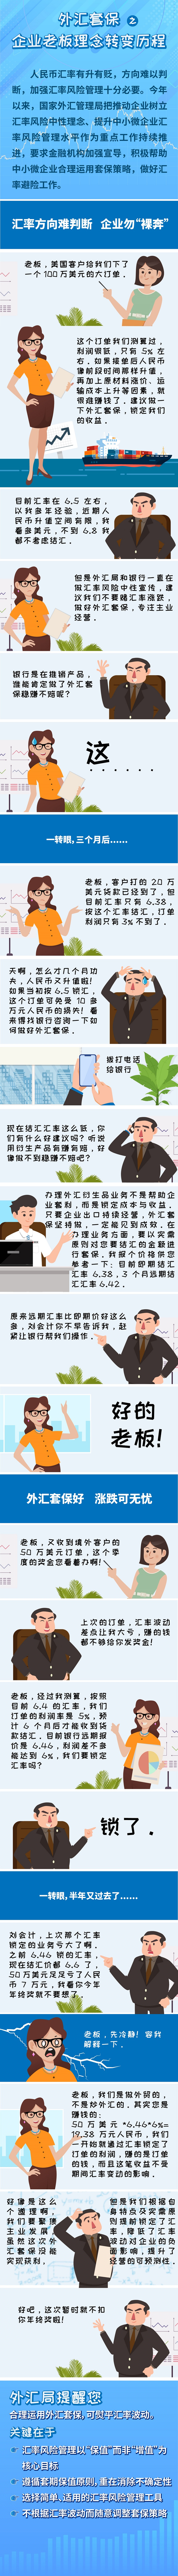 广东分局—外汇套保之企业老板理念转变历程.png